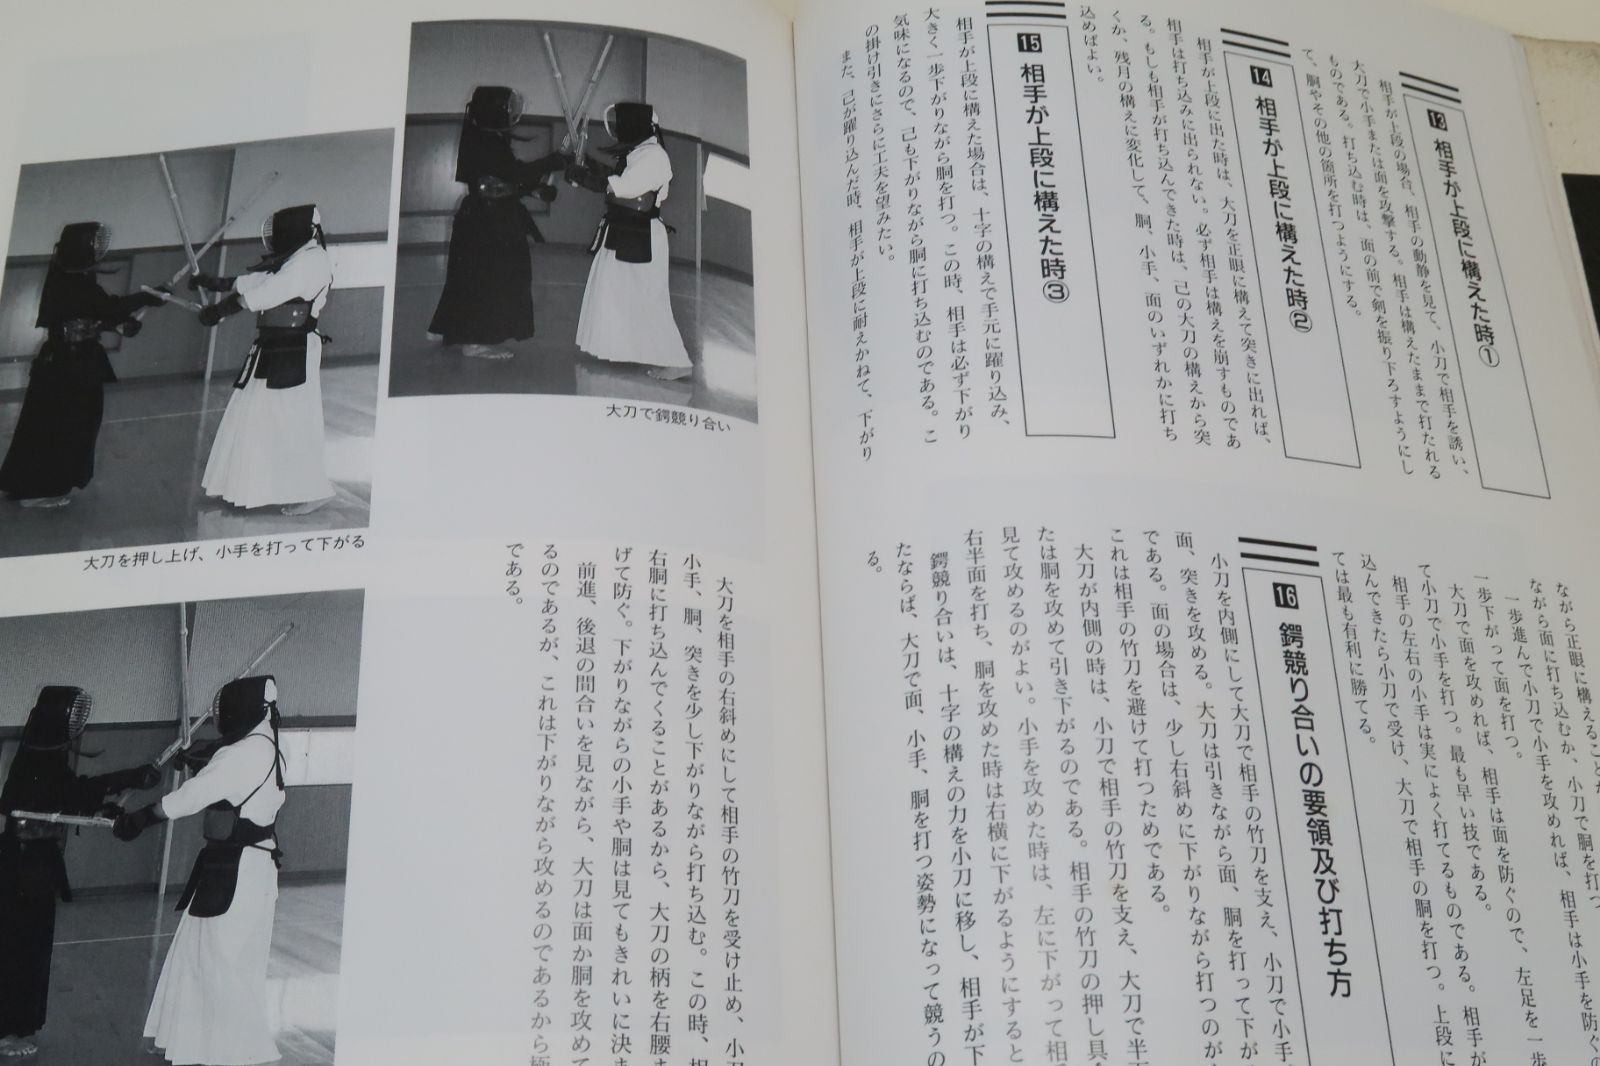 図解・手裏剣術/藤田西湖/本書は武術のうち擲武術特に手裏剣術に関する